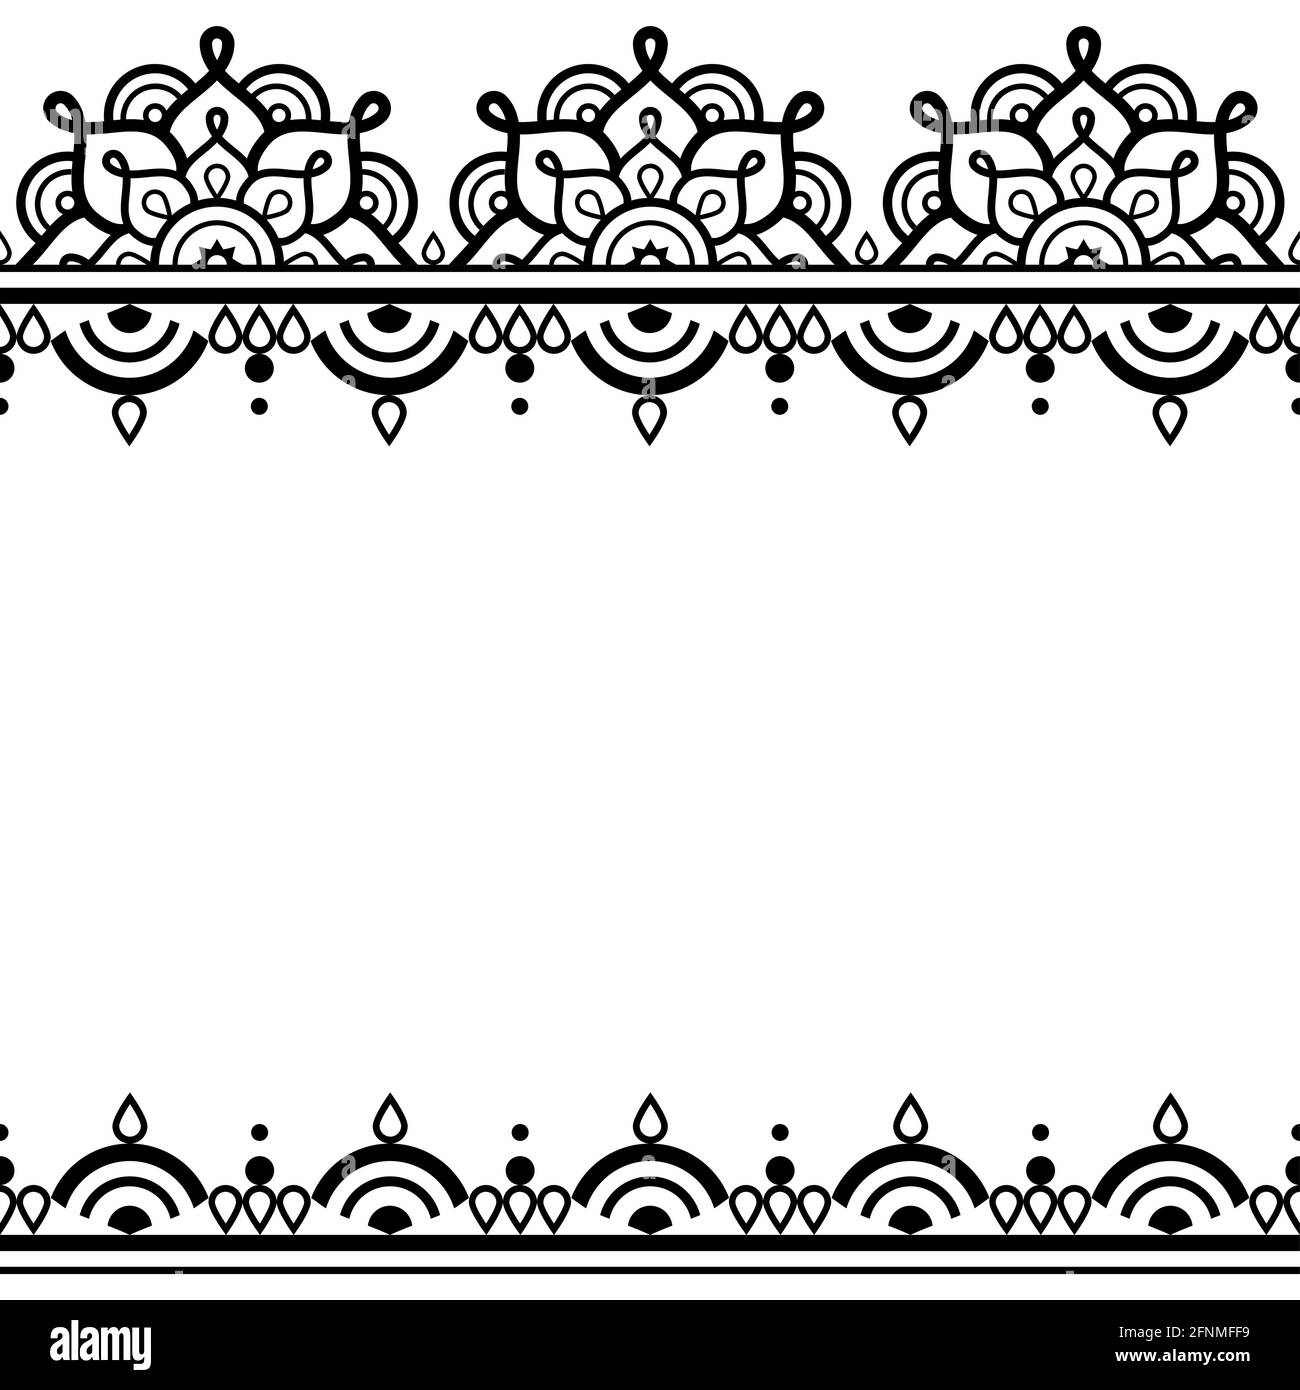 Tatuaggio indiano henné Mehndi stile tradizionale vettore biglietto d'auguri o. disegno di invito di nozze con mandala decorativa in bianco e nero e ge Illustrazione Vettoriale